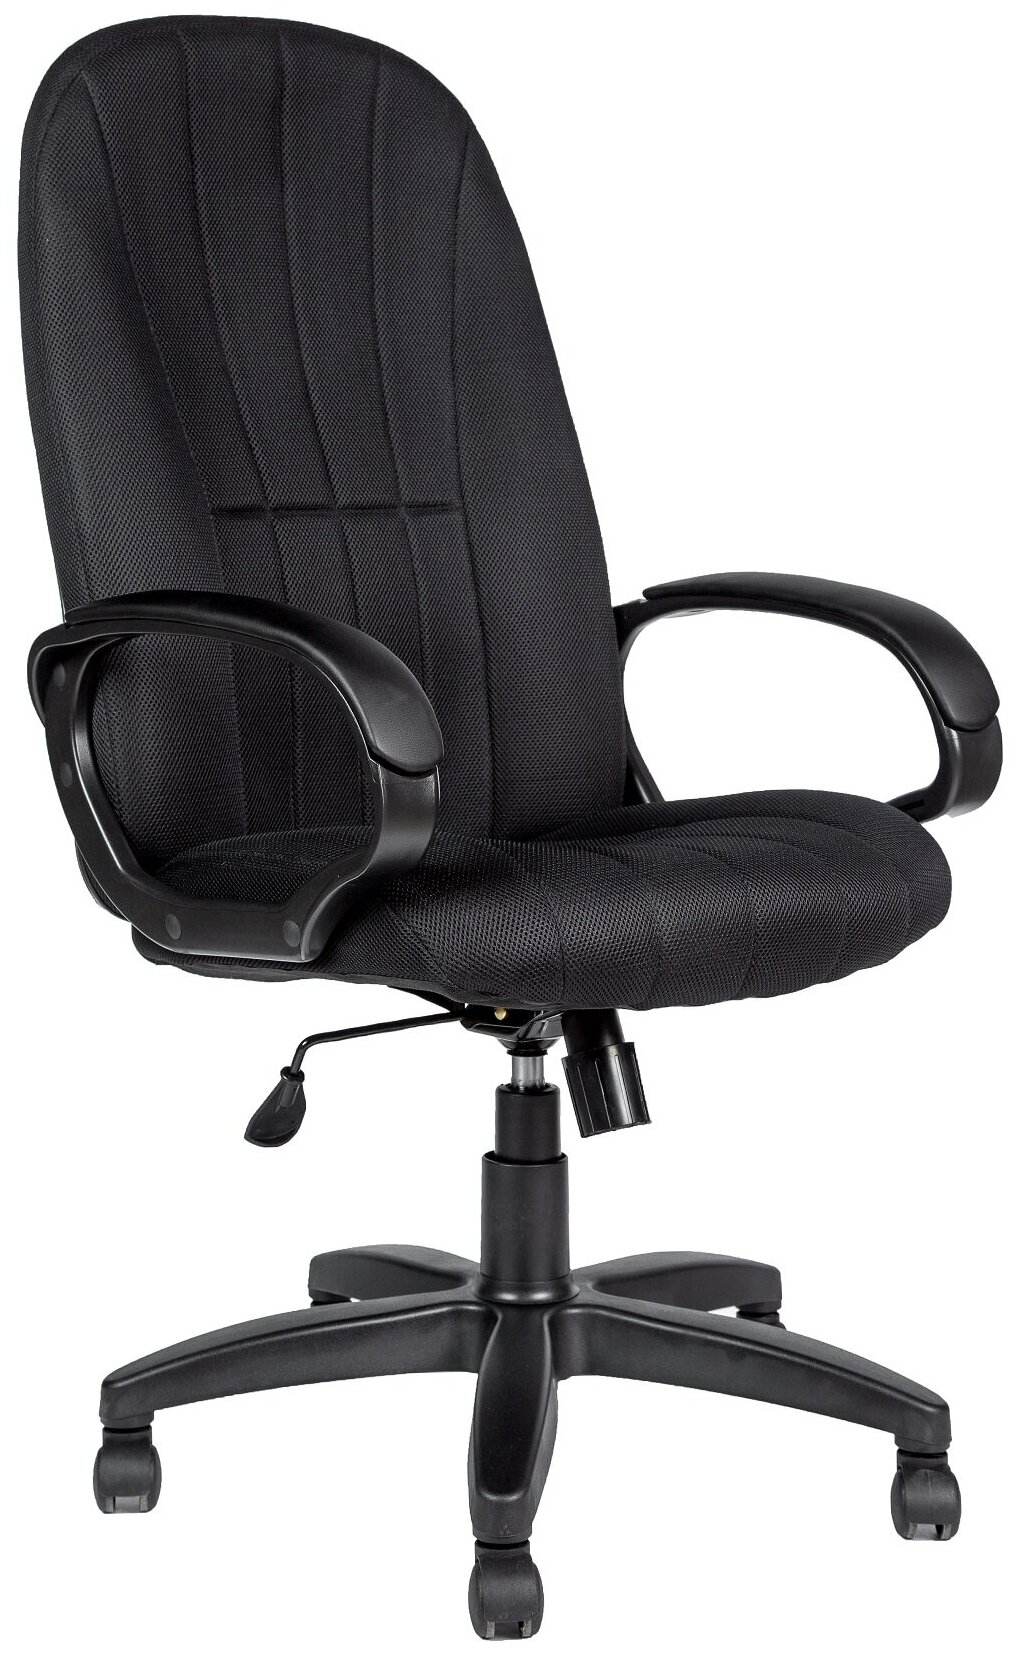 Компьютерное кресло Евростиль Вега Ультра SOFT офисное, обивка: ткань/сетка, цвет: черный